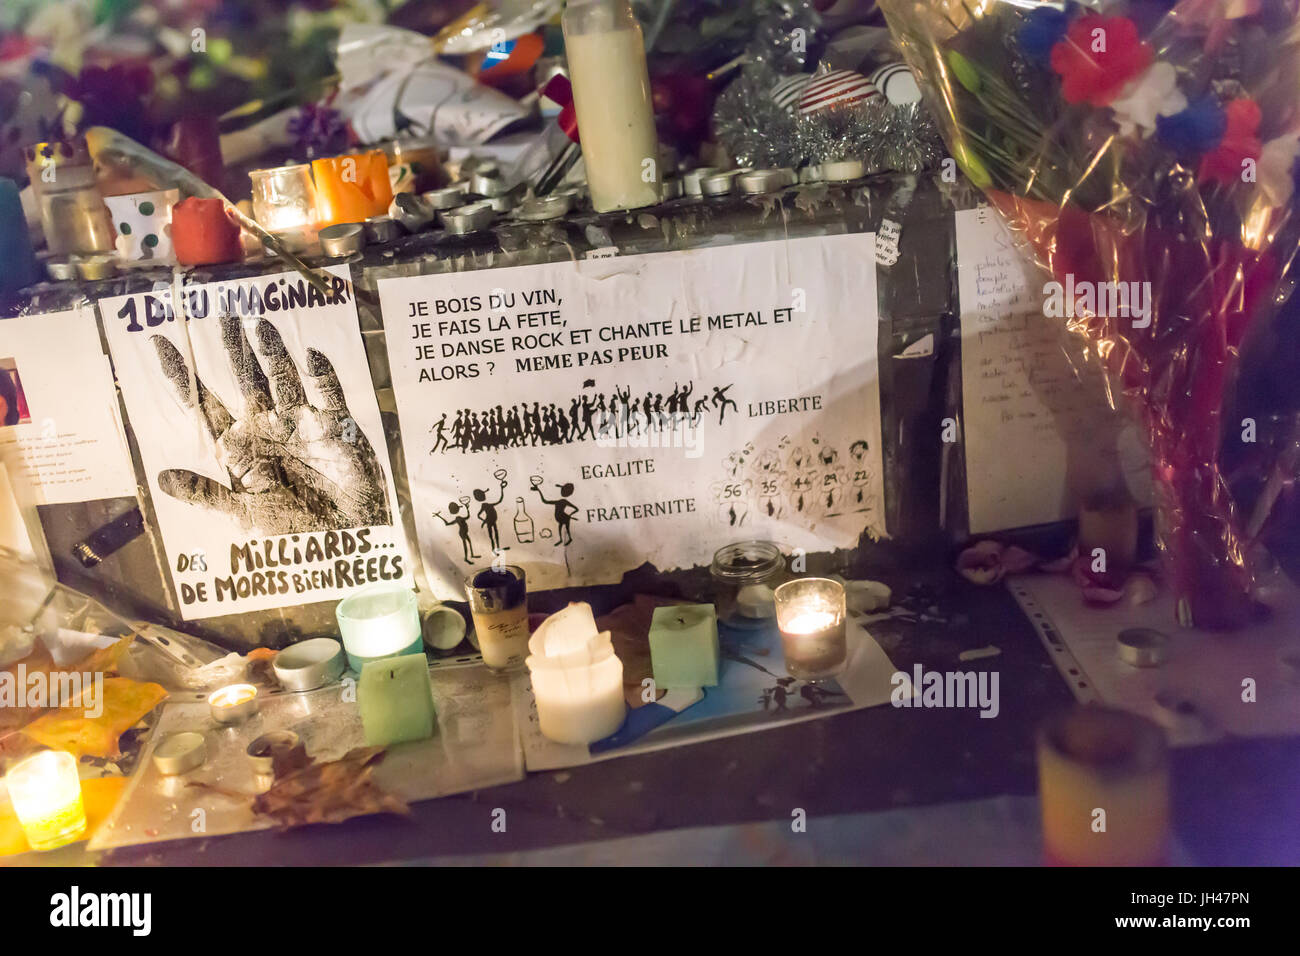 Paris lebt noch, keine Angst. ein paar Noten. Spontane Hommage an die Opfer der Terroranschläge in Paris, den 13. November 2015. Stockfoto